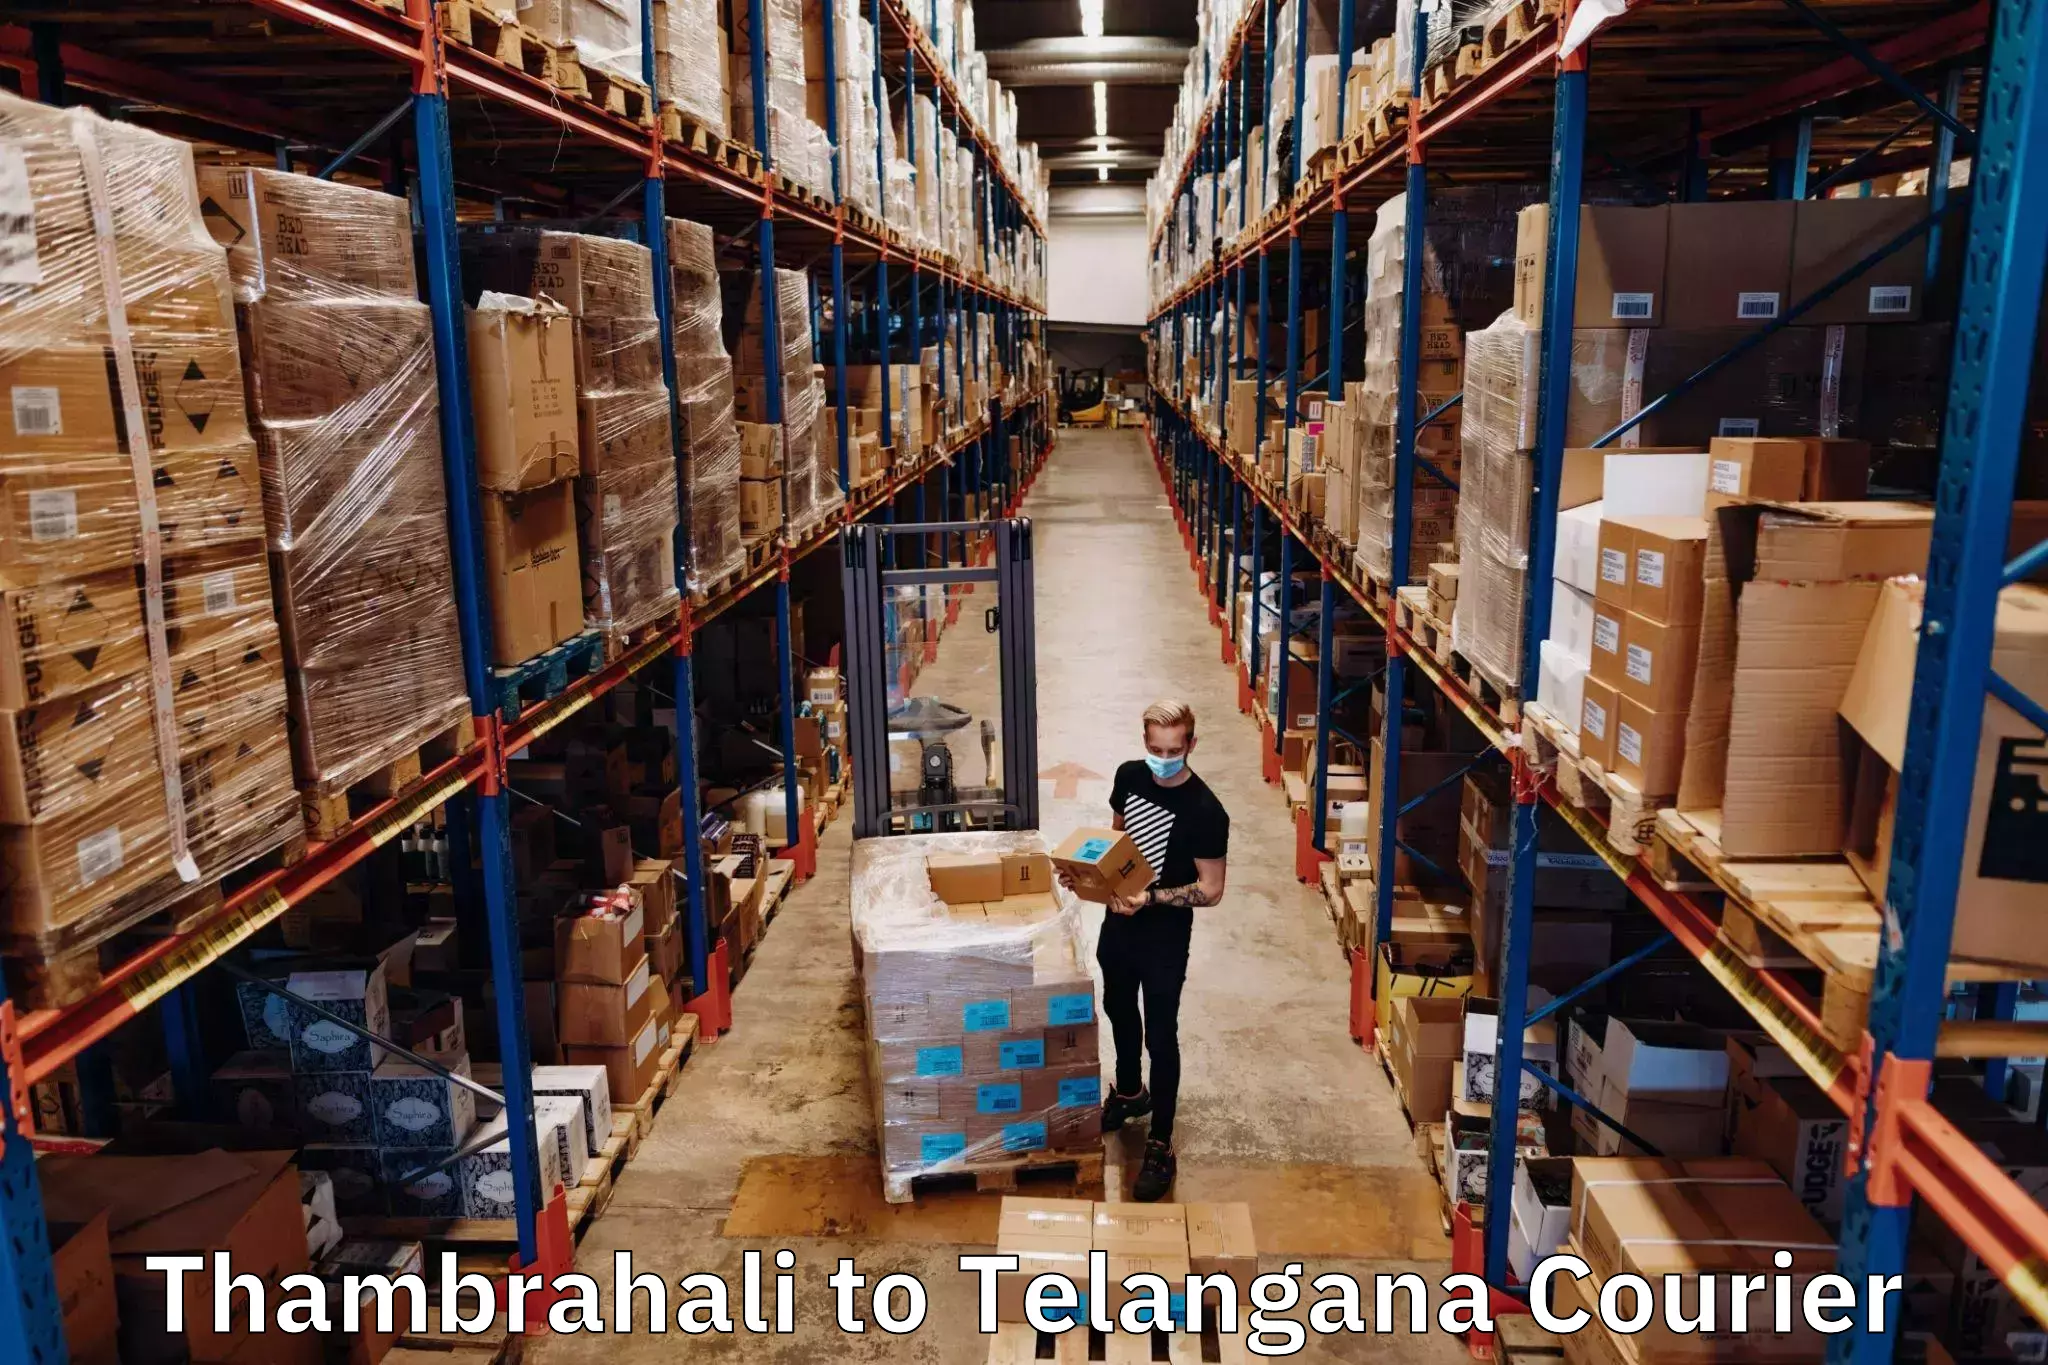 Seamless shipping service Thambrahali to Bonakal